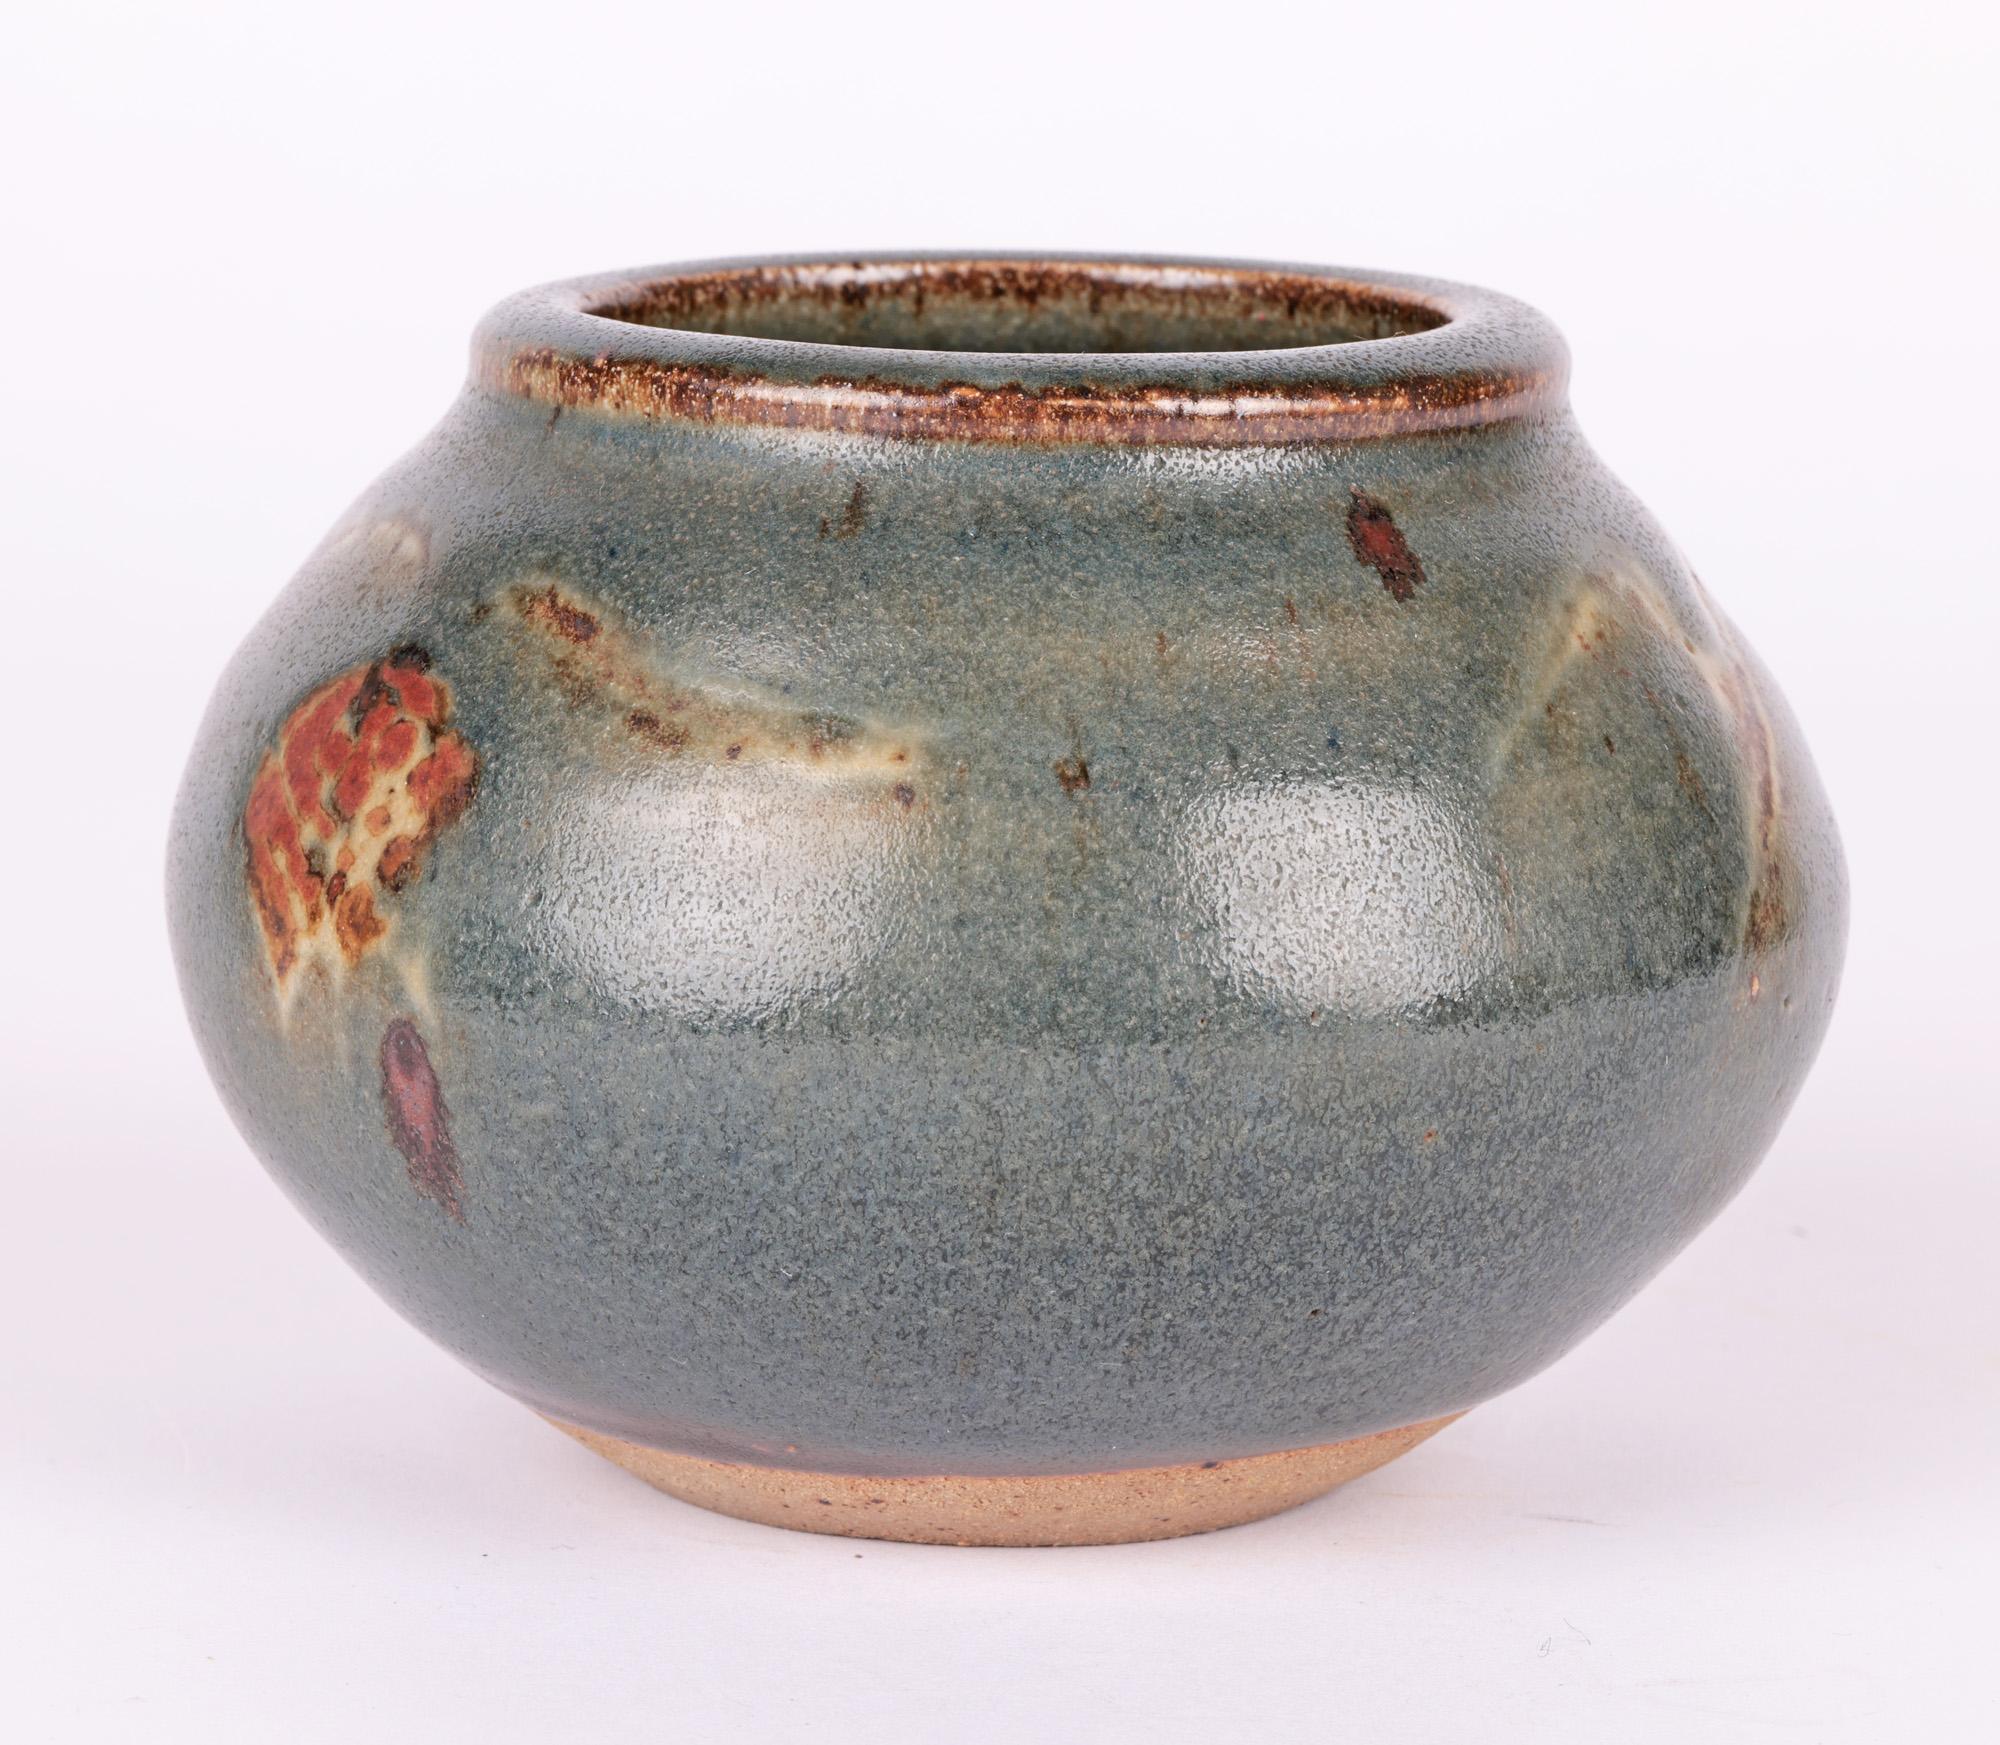 Glazed Bernard Howell Leach Studio Pottery Vase with Stylized Patterning For Sale